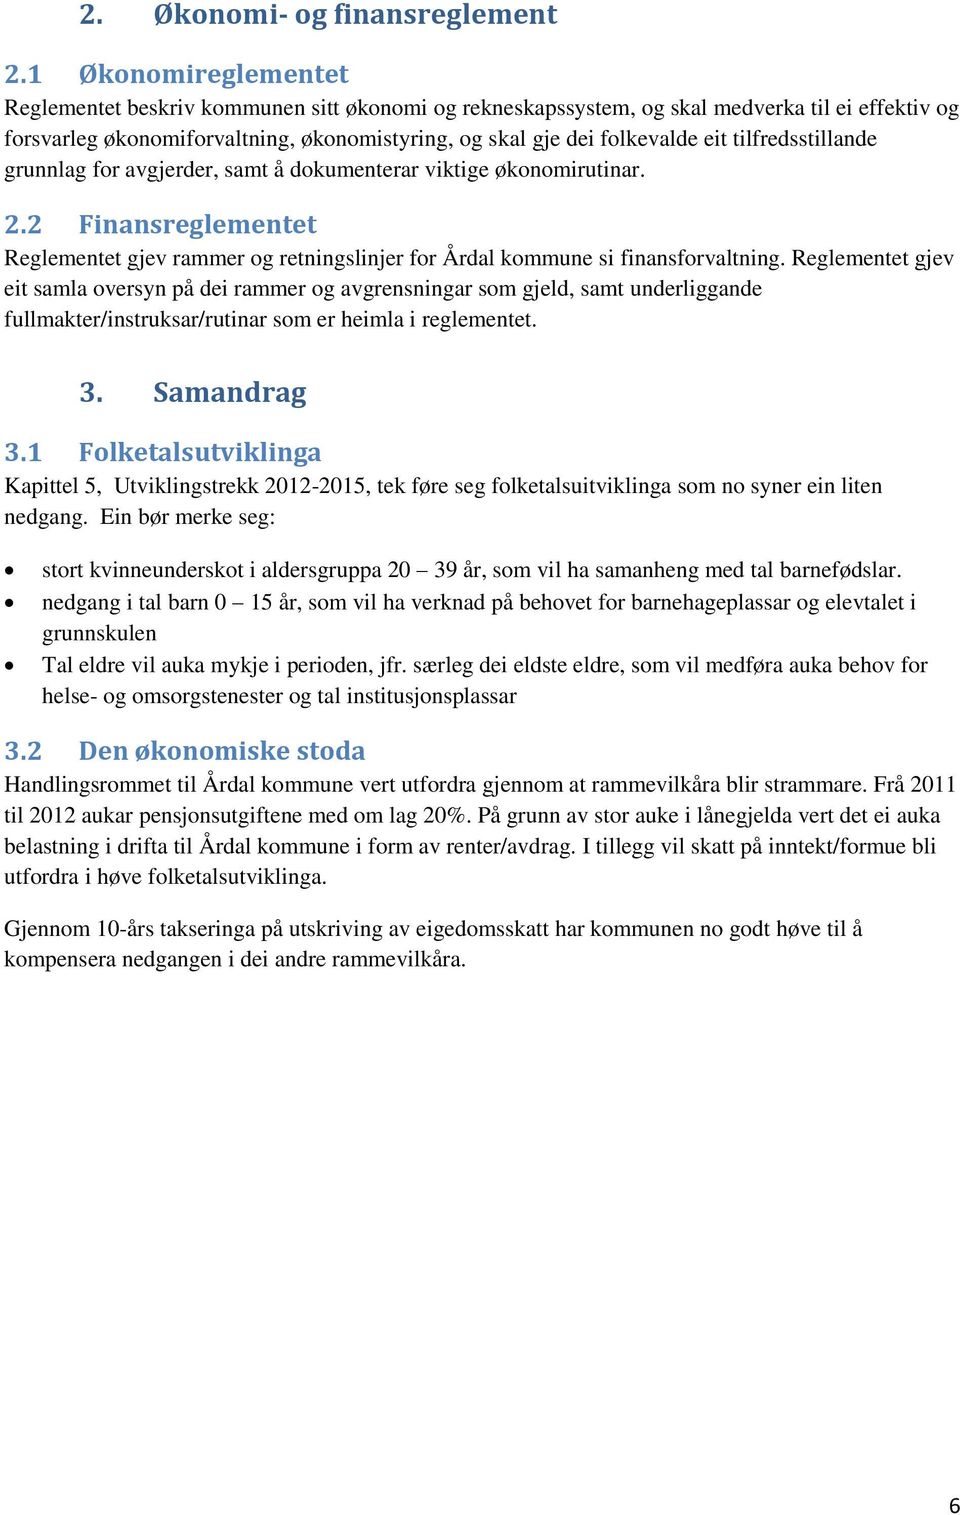 tilfredsstillande grunnlag for avgjerder, samt å dokumenterar viktige økonomirutinar. 2.2 Finansreglementet Reglementet gjev rammer og retningslinjer for Årdal kommune si finansforvaltning.